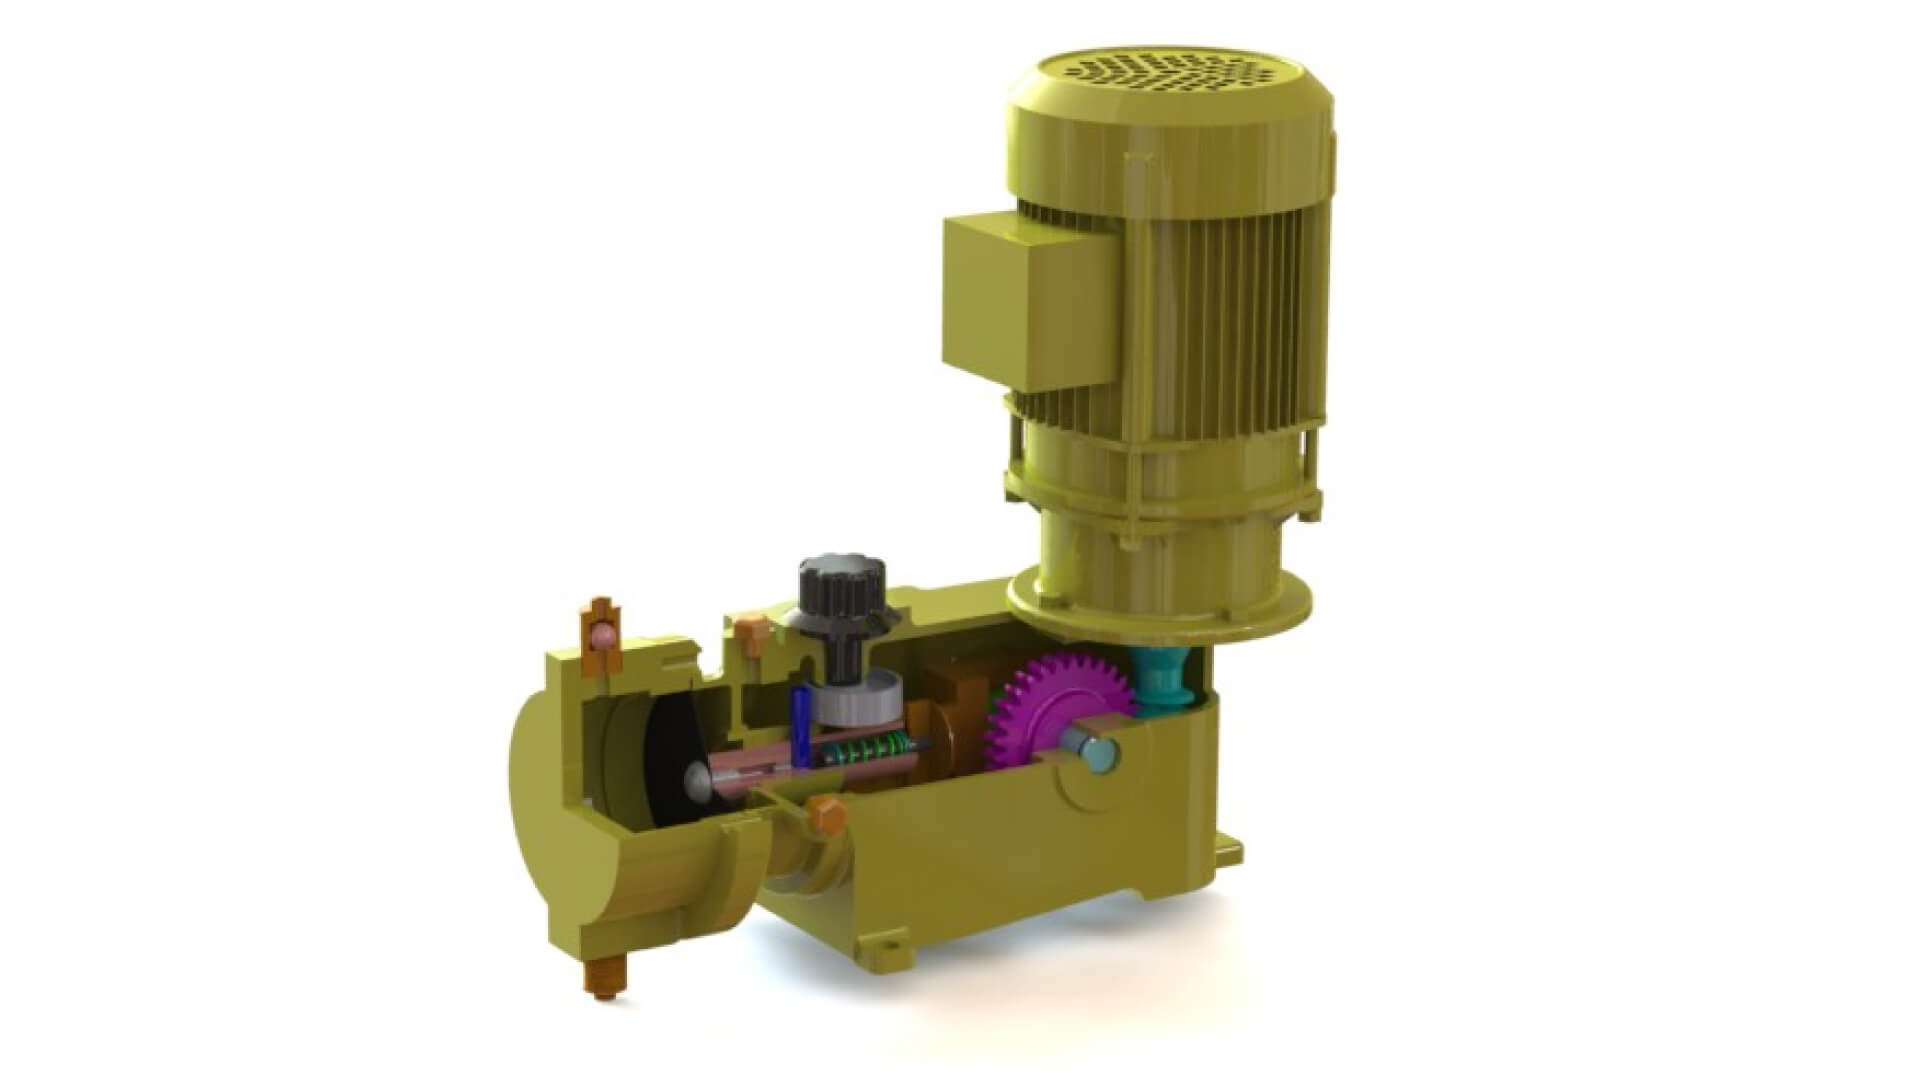 A 3D CAD drawing of a metering pump